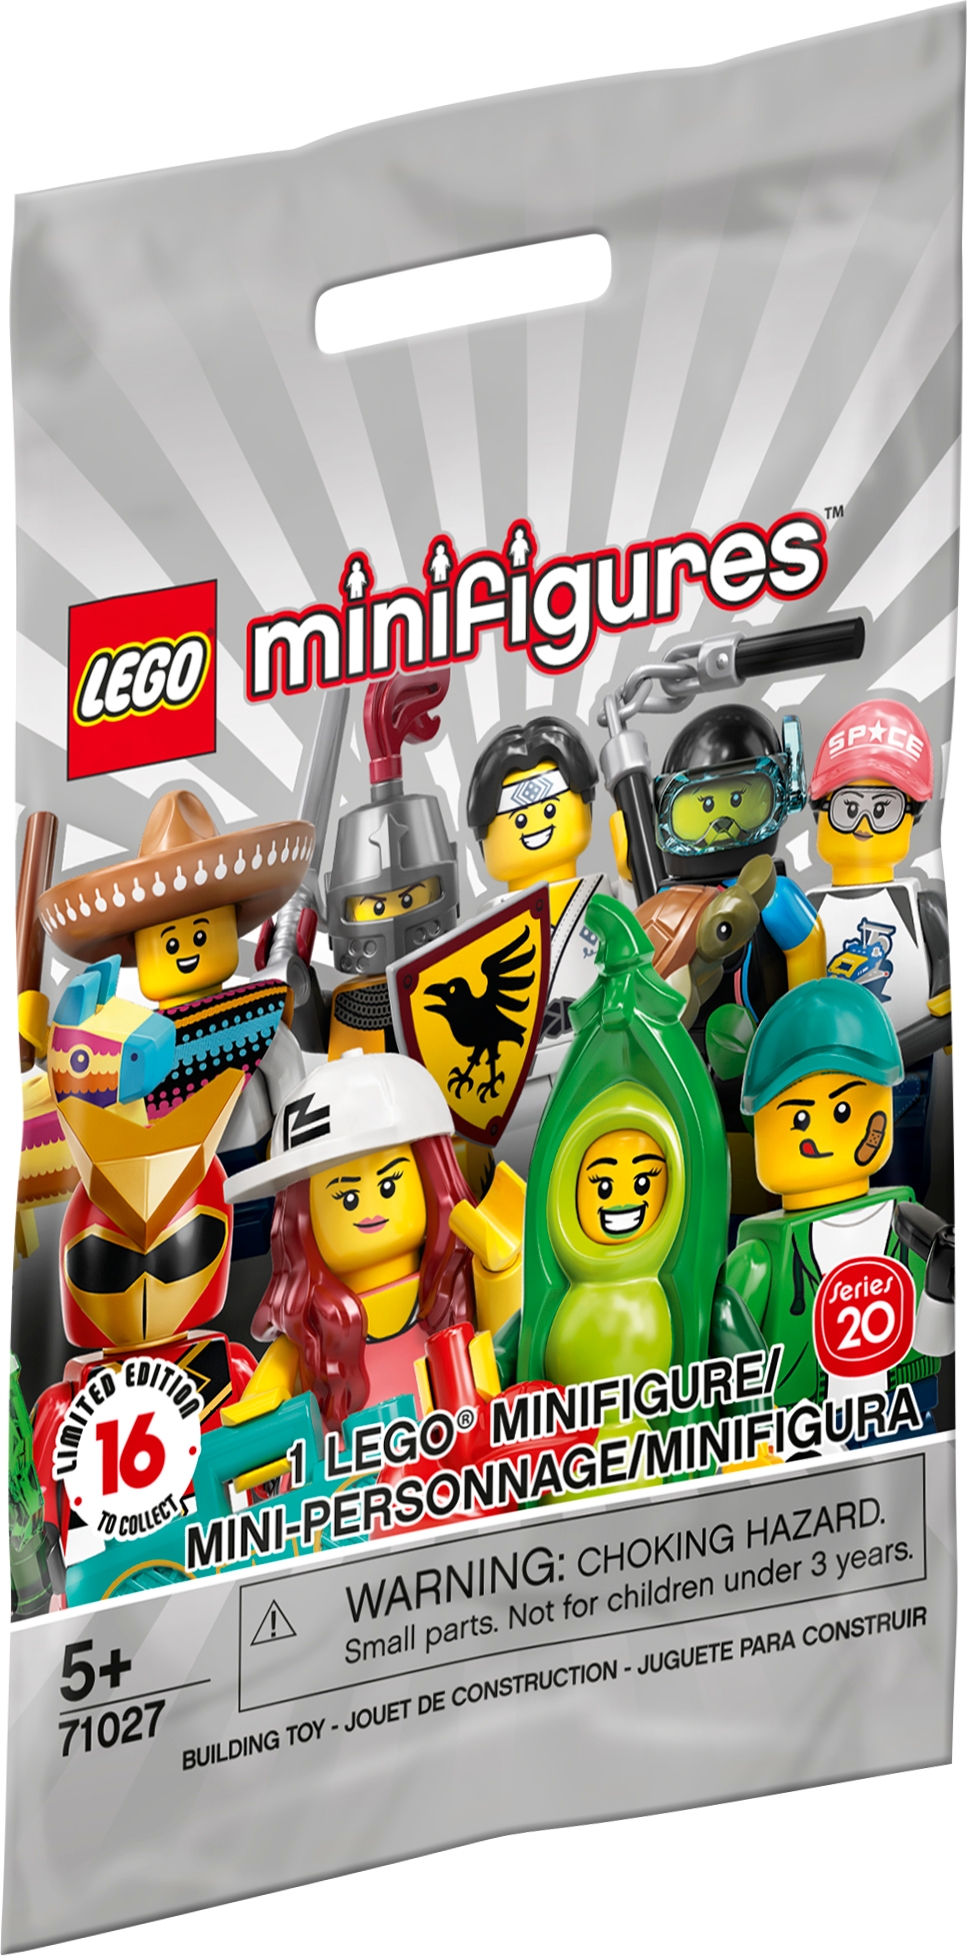 TELAIO di visualizzazione per visualizzare LEGO MINIFIGURES SERIE 20-71027 Design 3 LOGO 3 